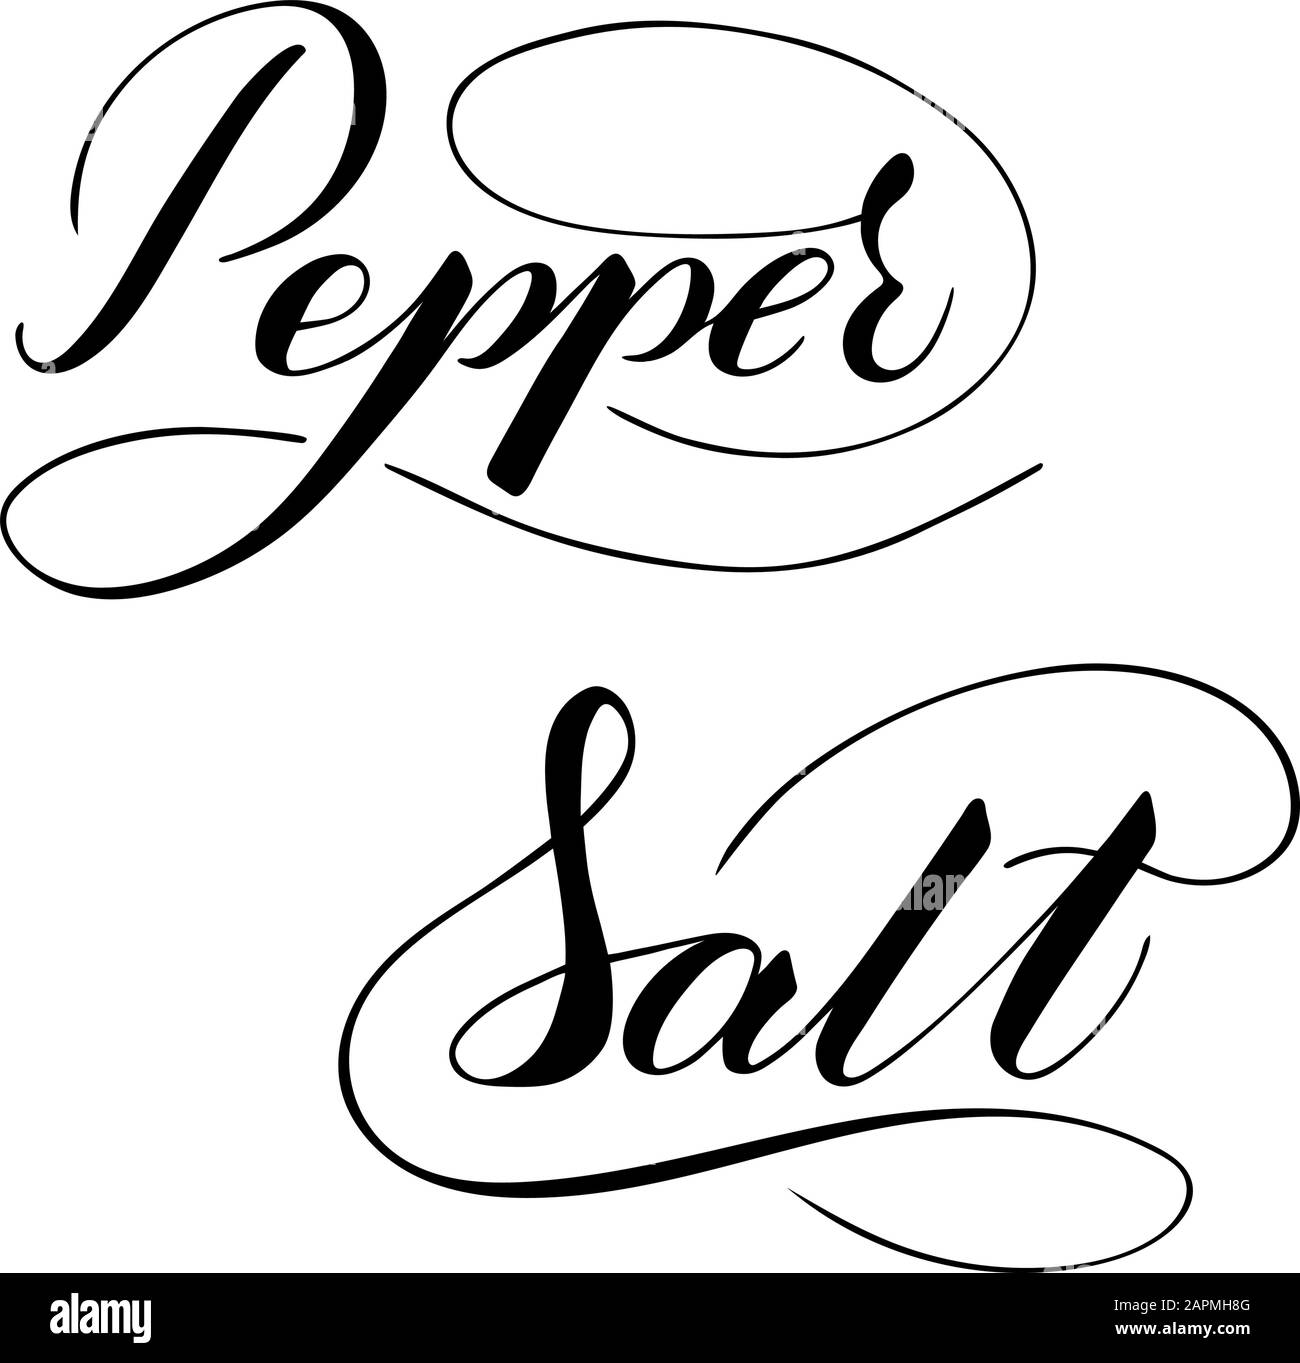 Vector handgeschriebener Salz- und Pfeffertext isoliert auf weißem Hintergrund. Küche gesunde Gewürze zum Kochen. Schrift mit Pinselschrift mit Aufblühen. Stock Vektor